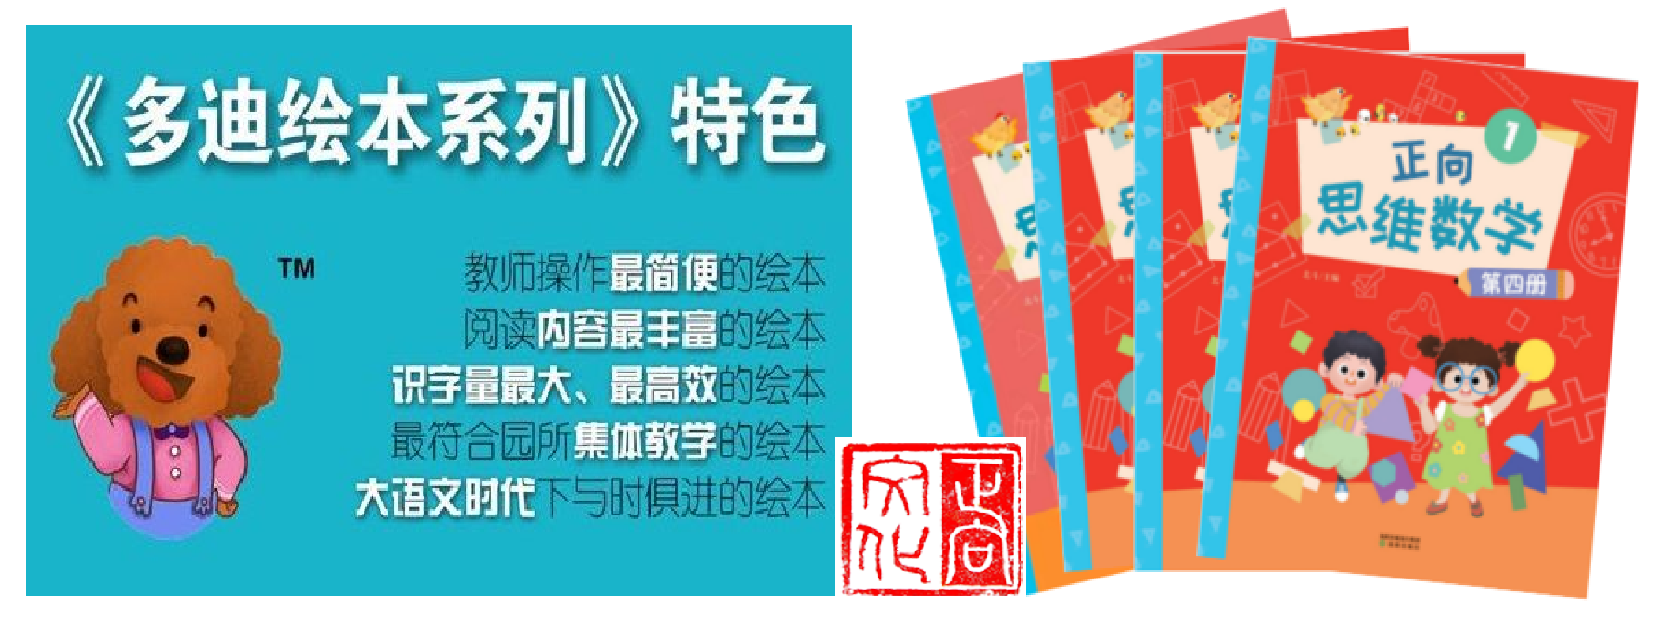 优质的产品一流的服务***北京理工大学《学前幼儿素质教育丛书》英语及 